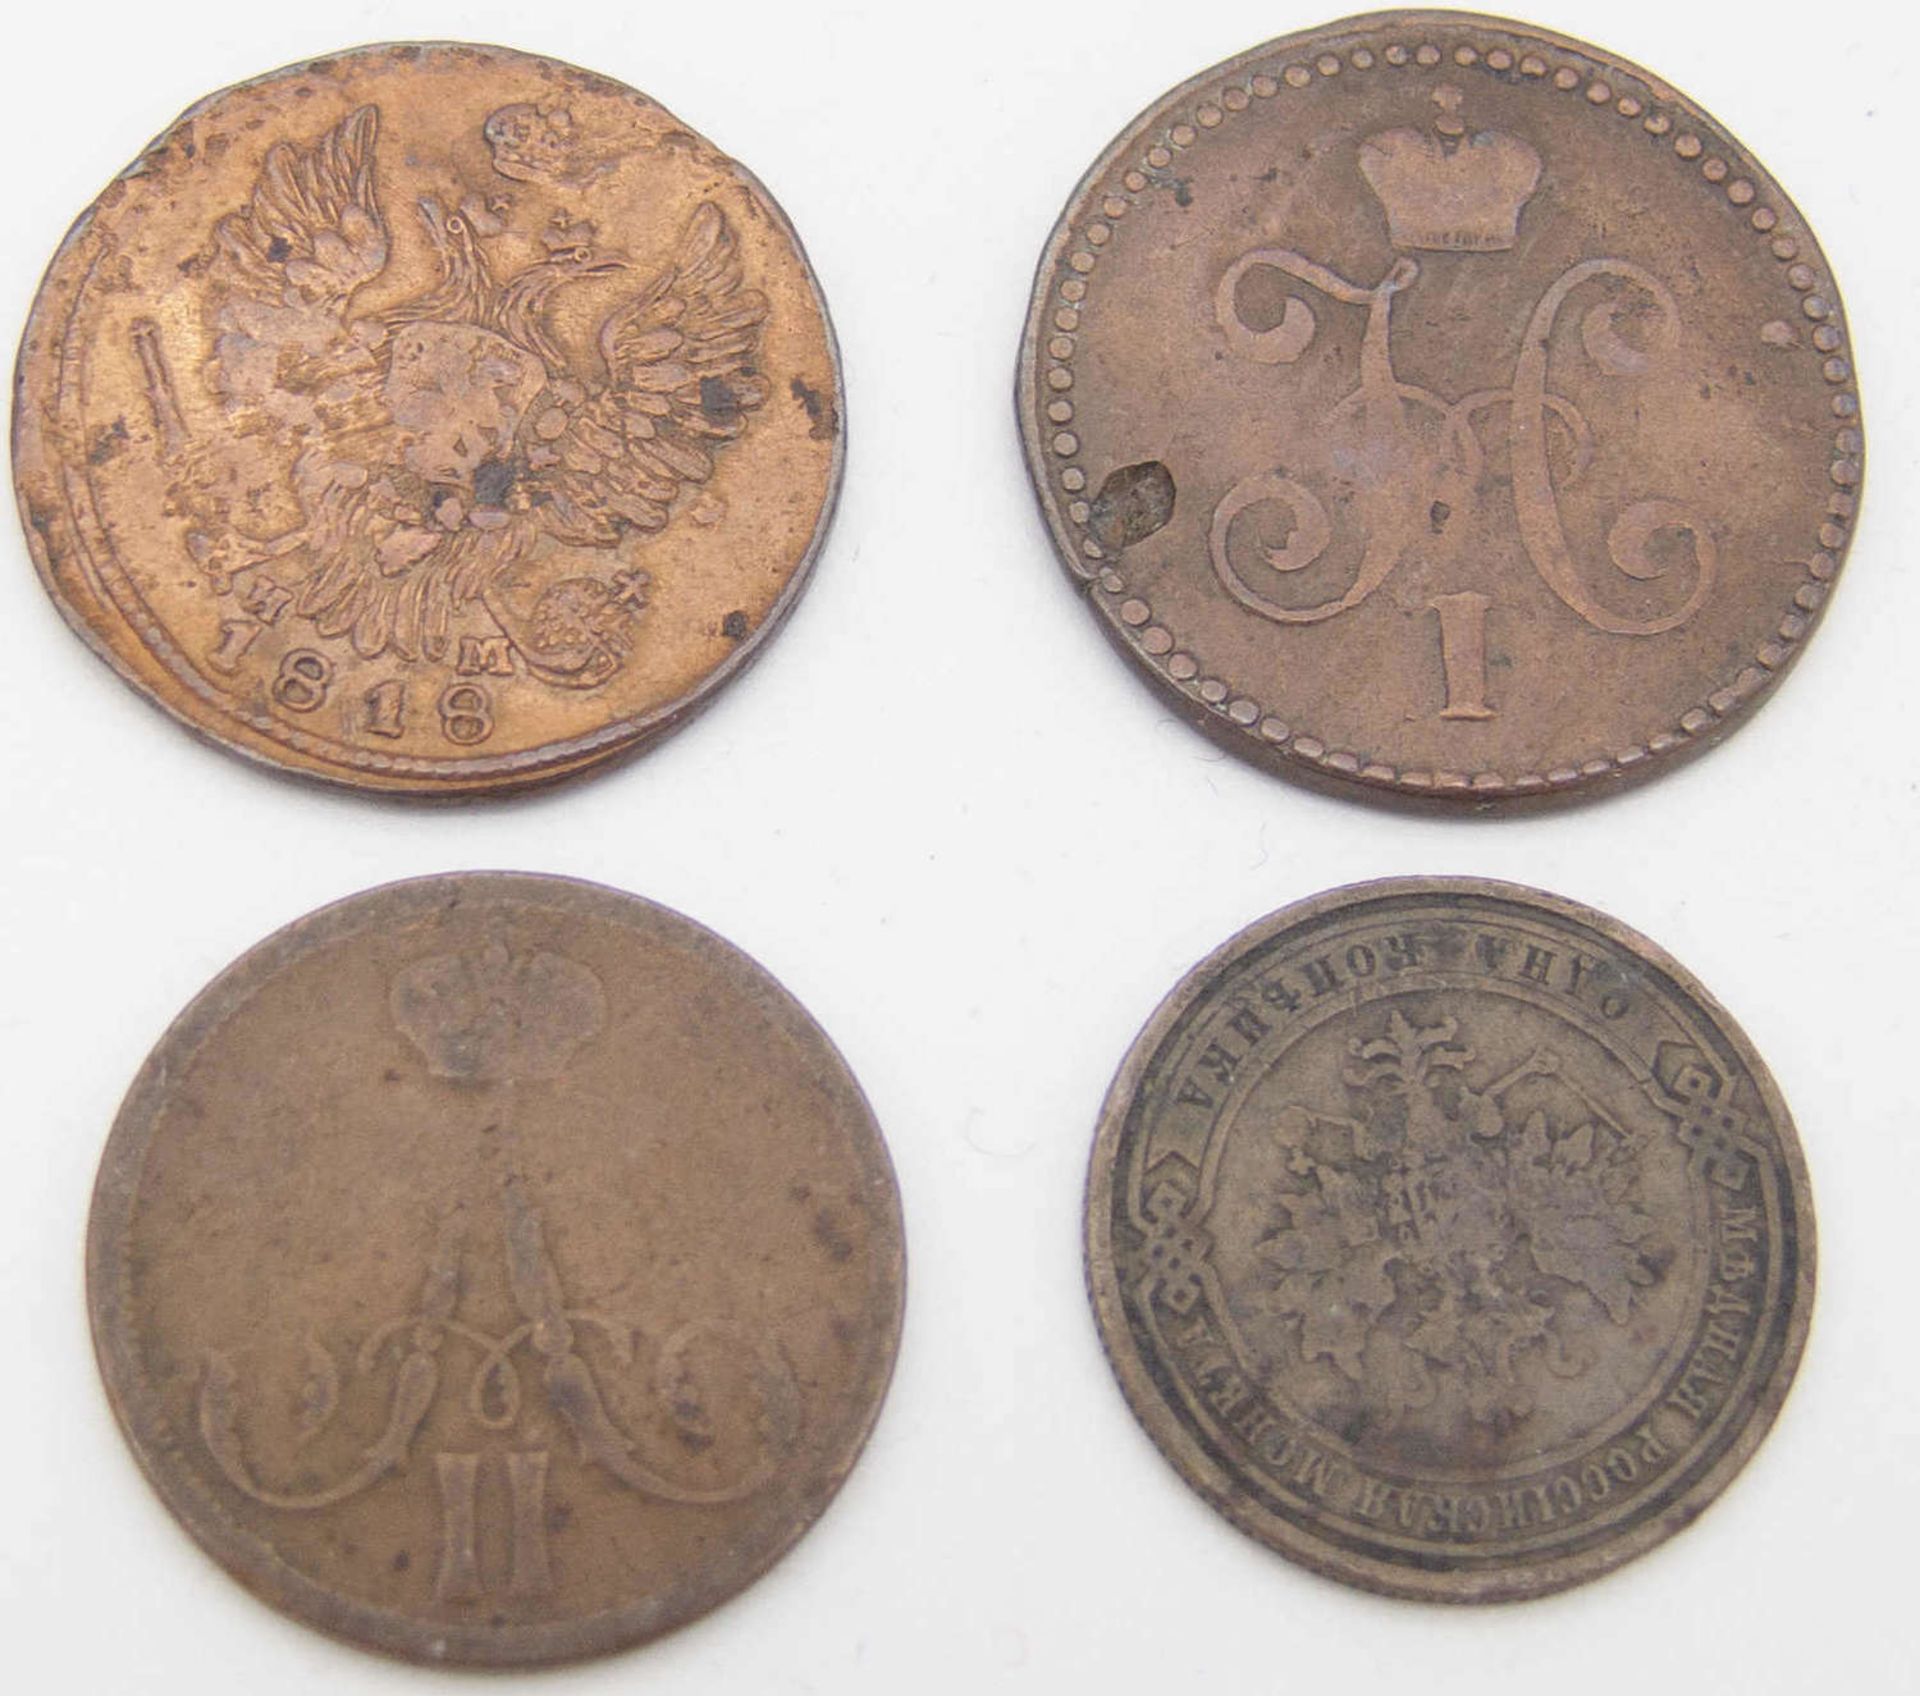 Russland 1818/1908, Lot 1 Kopeken - Münzen, dabei 1818, 1844, 1866, 1908. Erhaltung: ss-s.Russia - Bild 2 aus 2